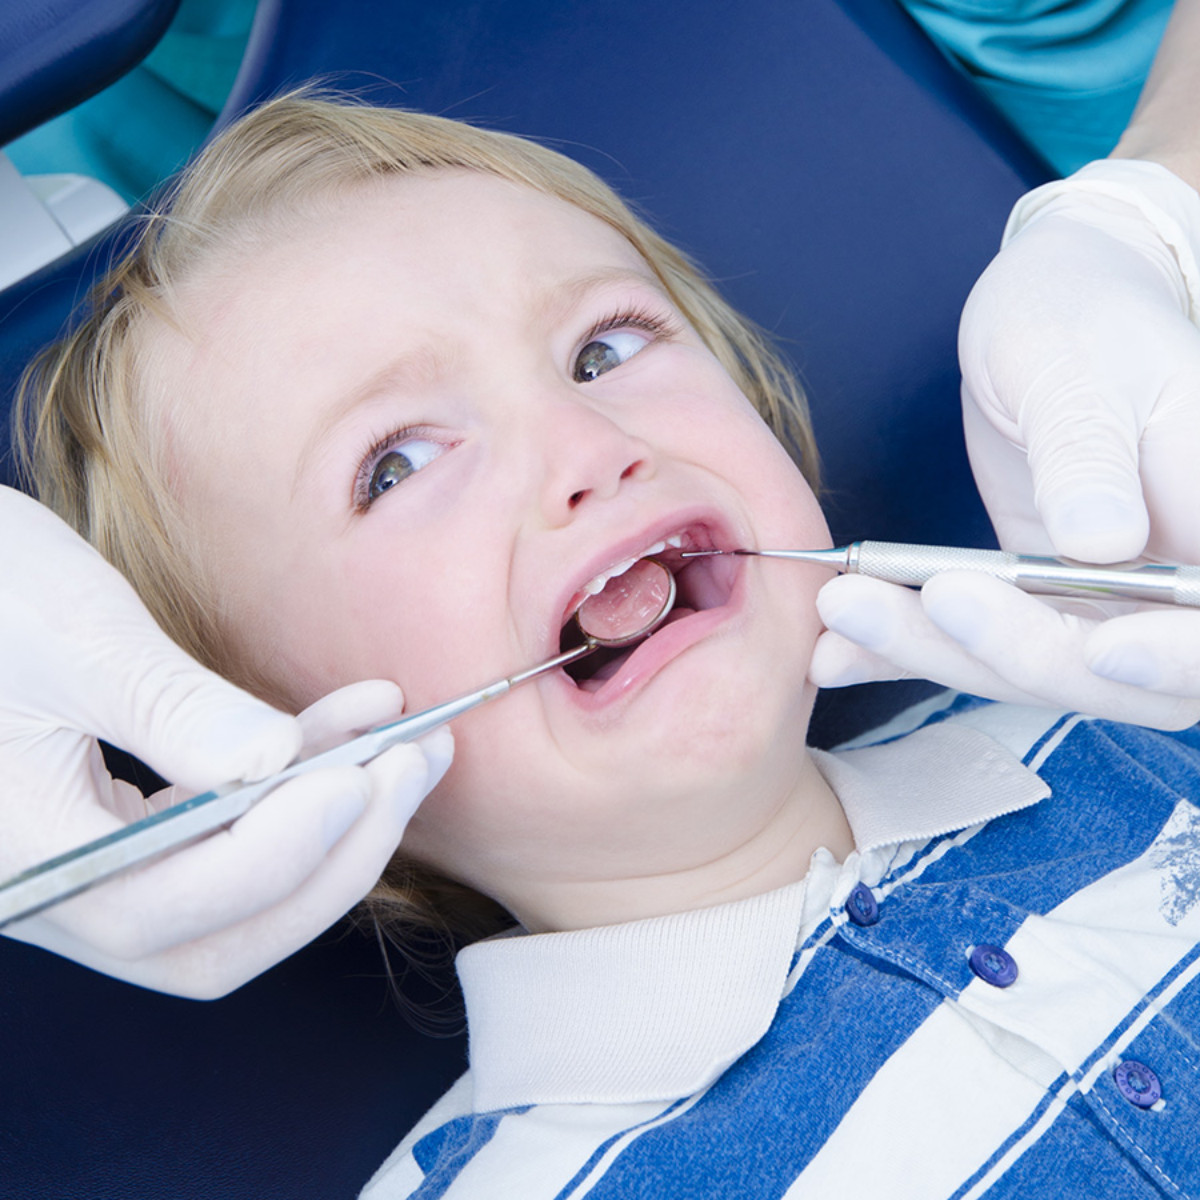 Tandheelkundige behandeling van angstige kinderen: belijden, vermijden of begeleiden?